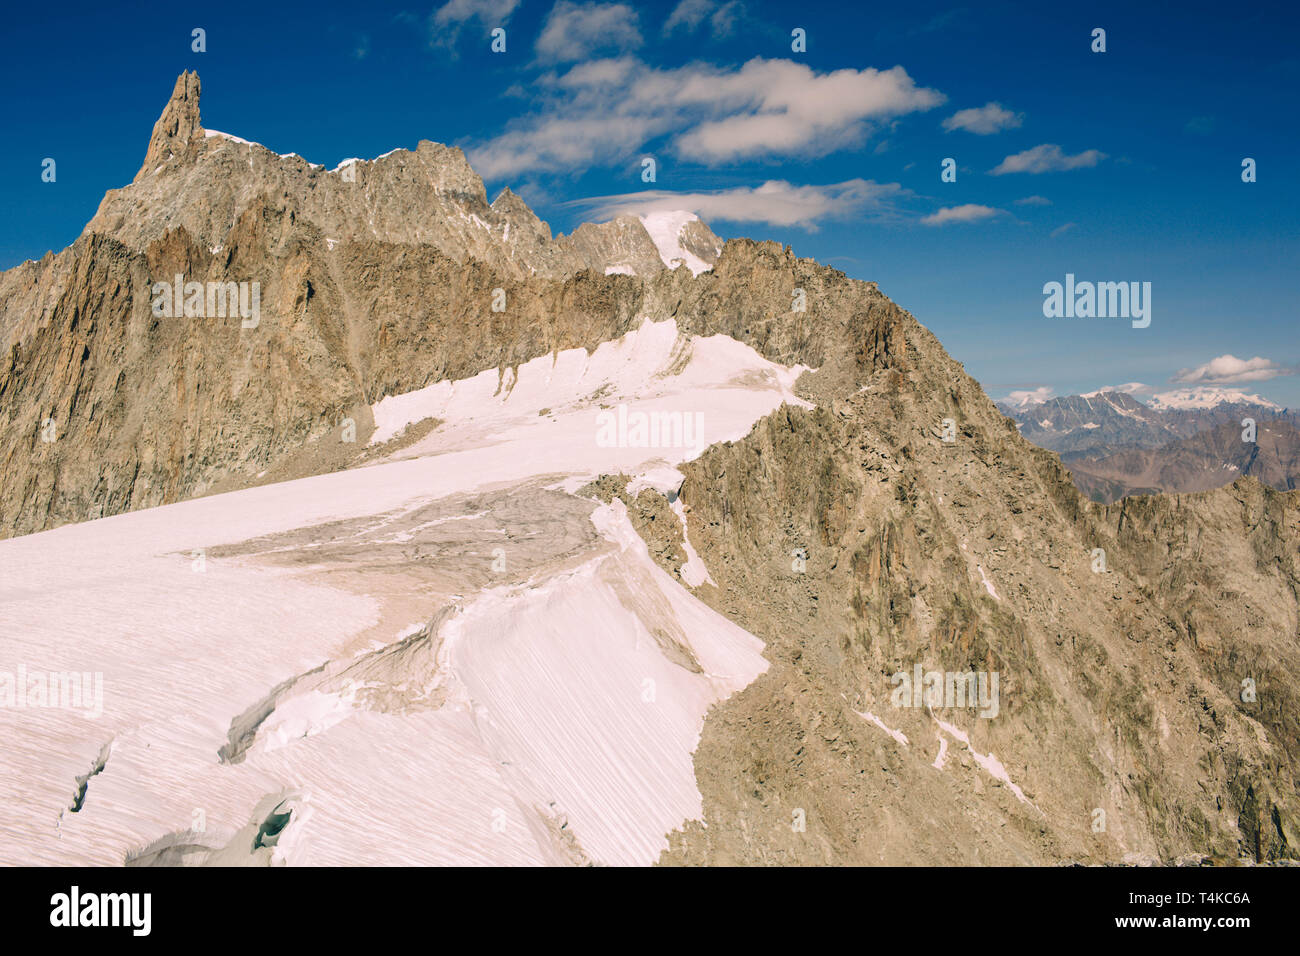 Panorama del massiccio del Monte Bianco, la più alta e la più popolare la montagna in Europa nordovest d'Italia. Foto Stock